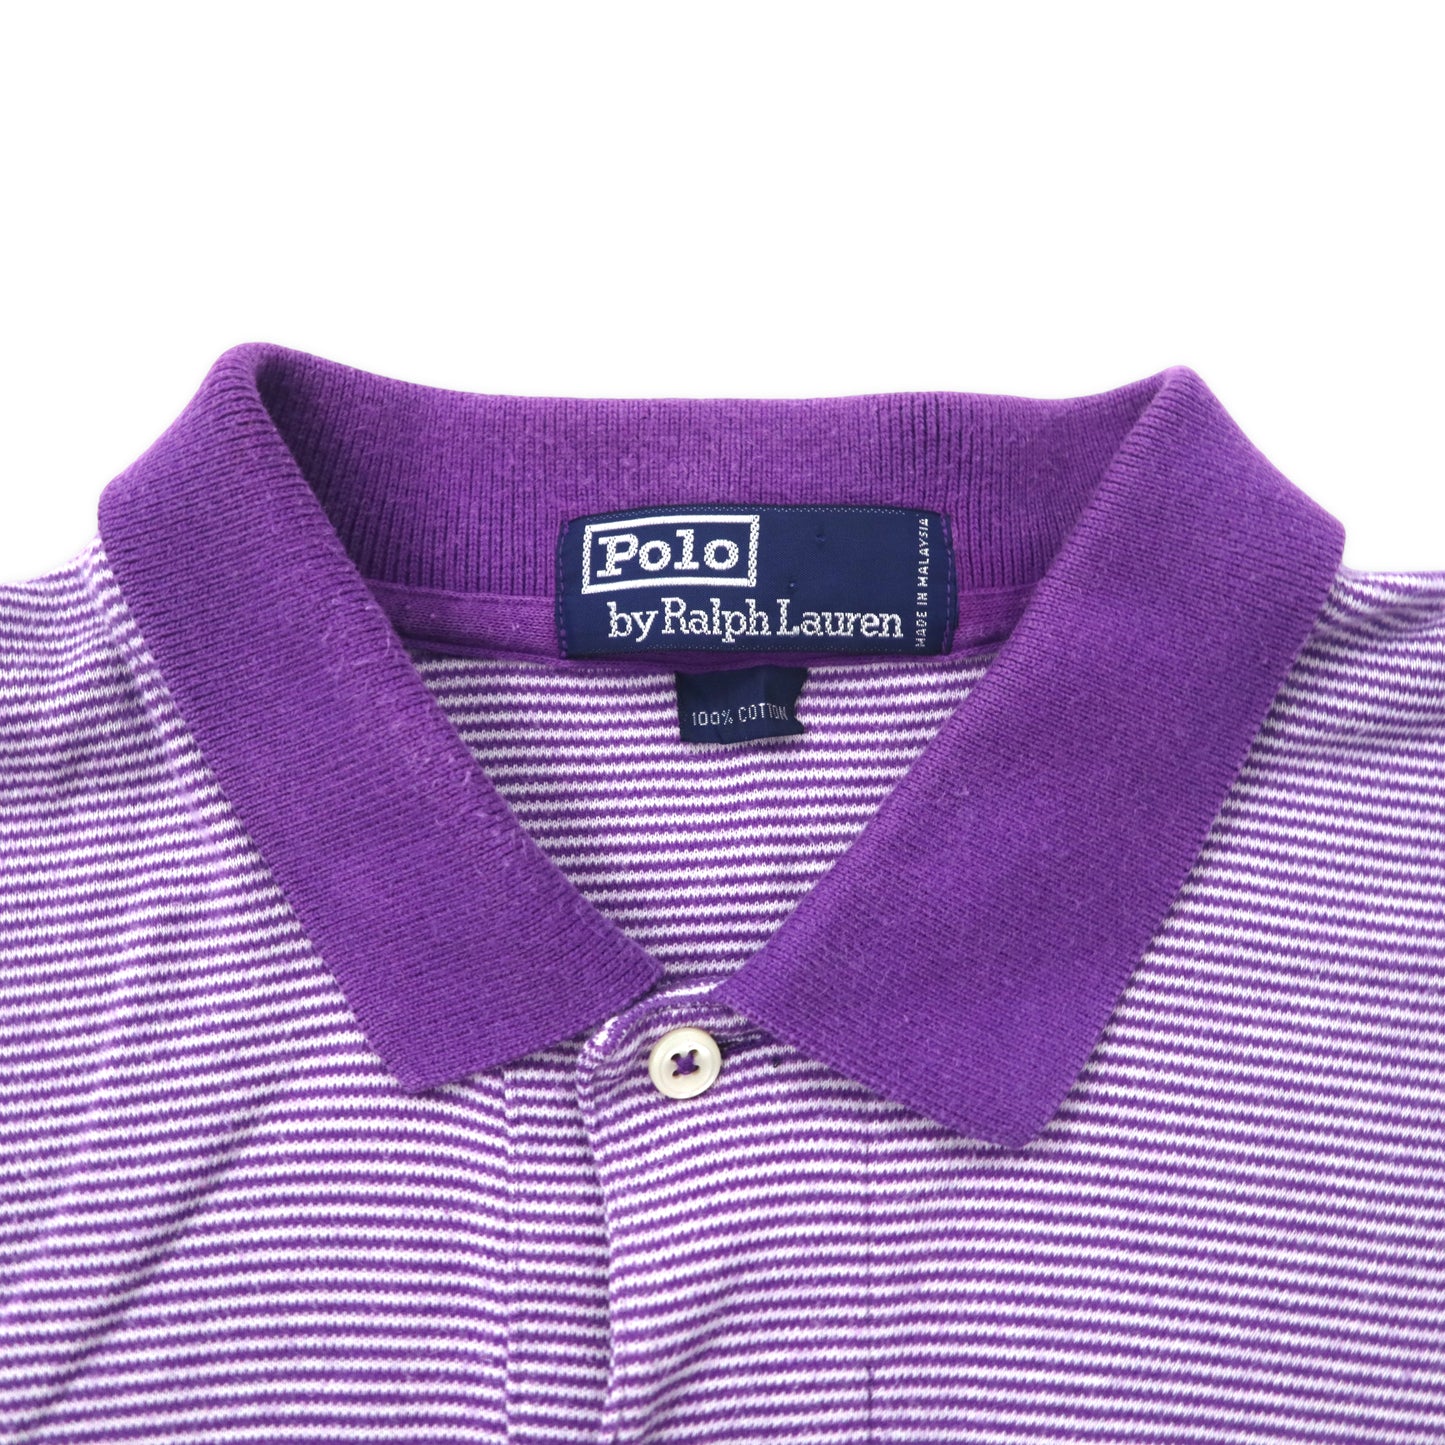 Polo by Ralph Lauren ボーダー ポロシャツ XL パープル コットン スモールポニー刺繍